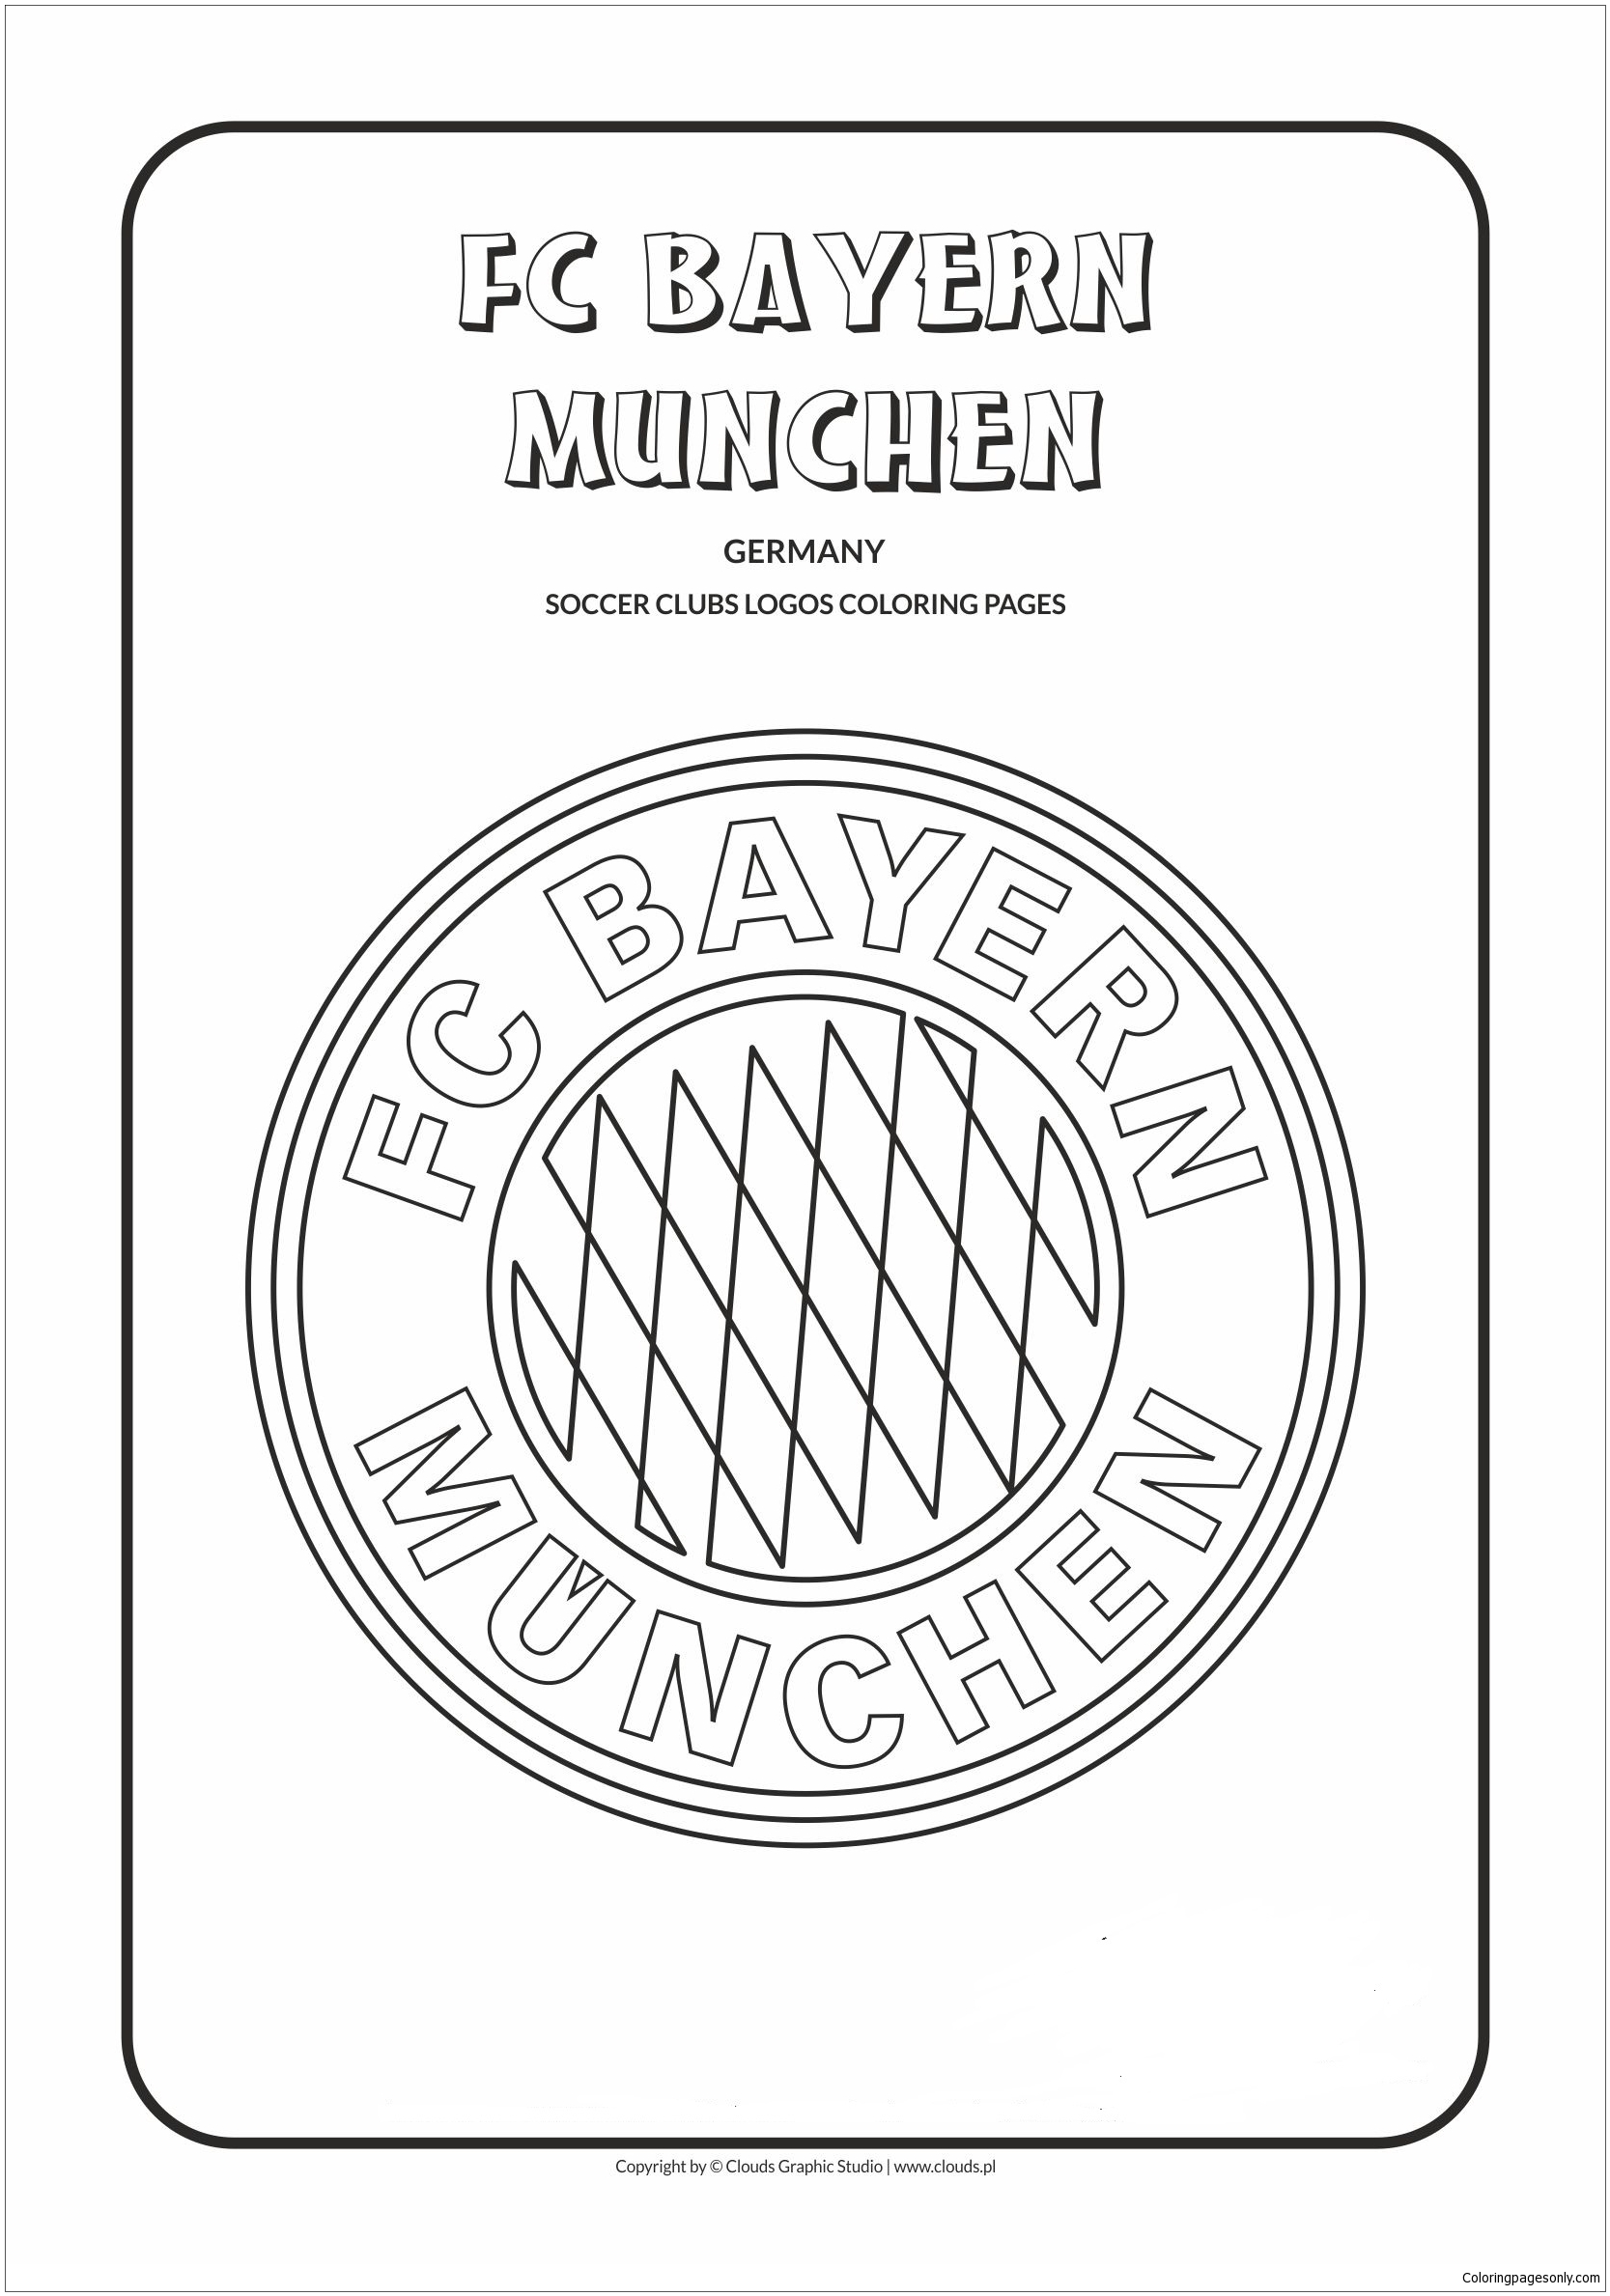 Loghi della squadra FC Bayern Munchen della Bundesliga tedesca